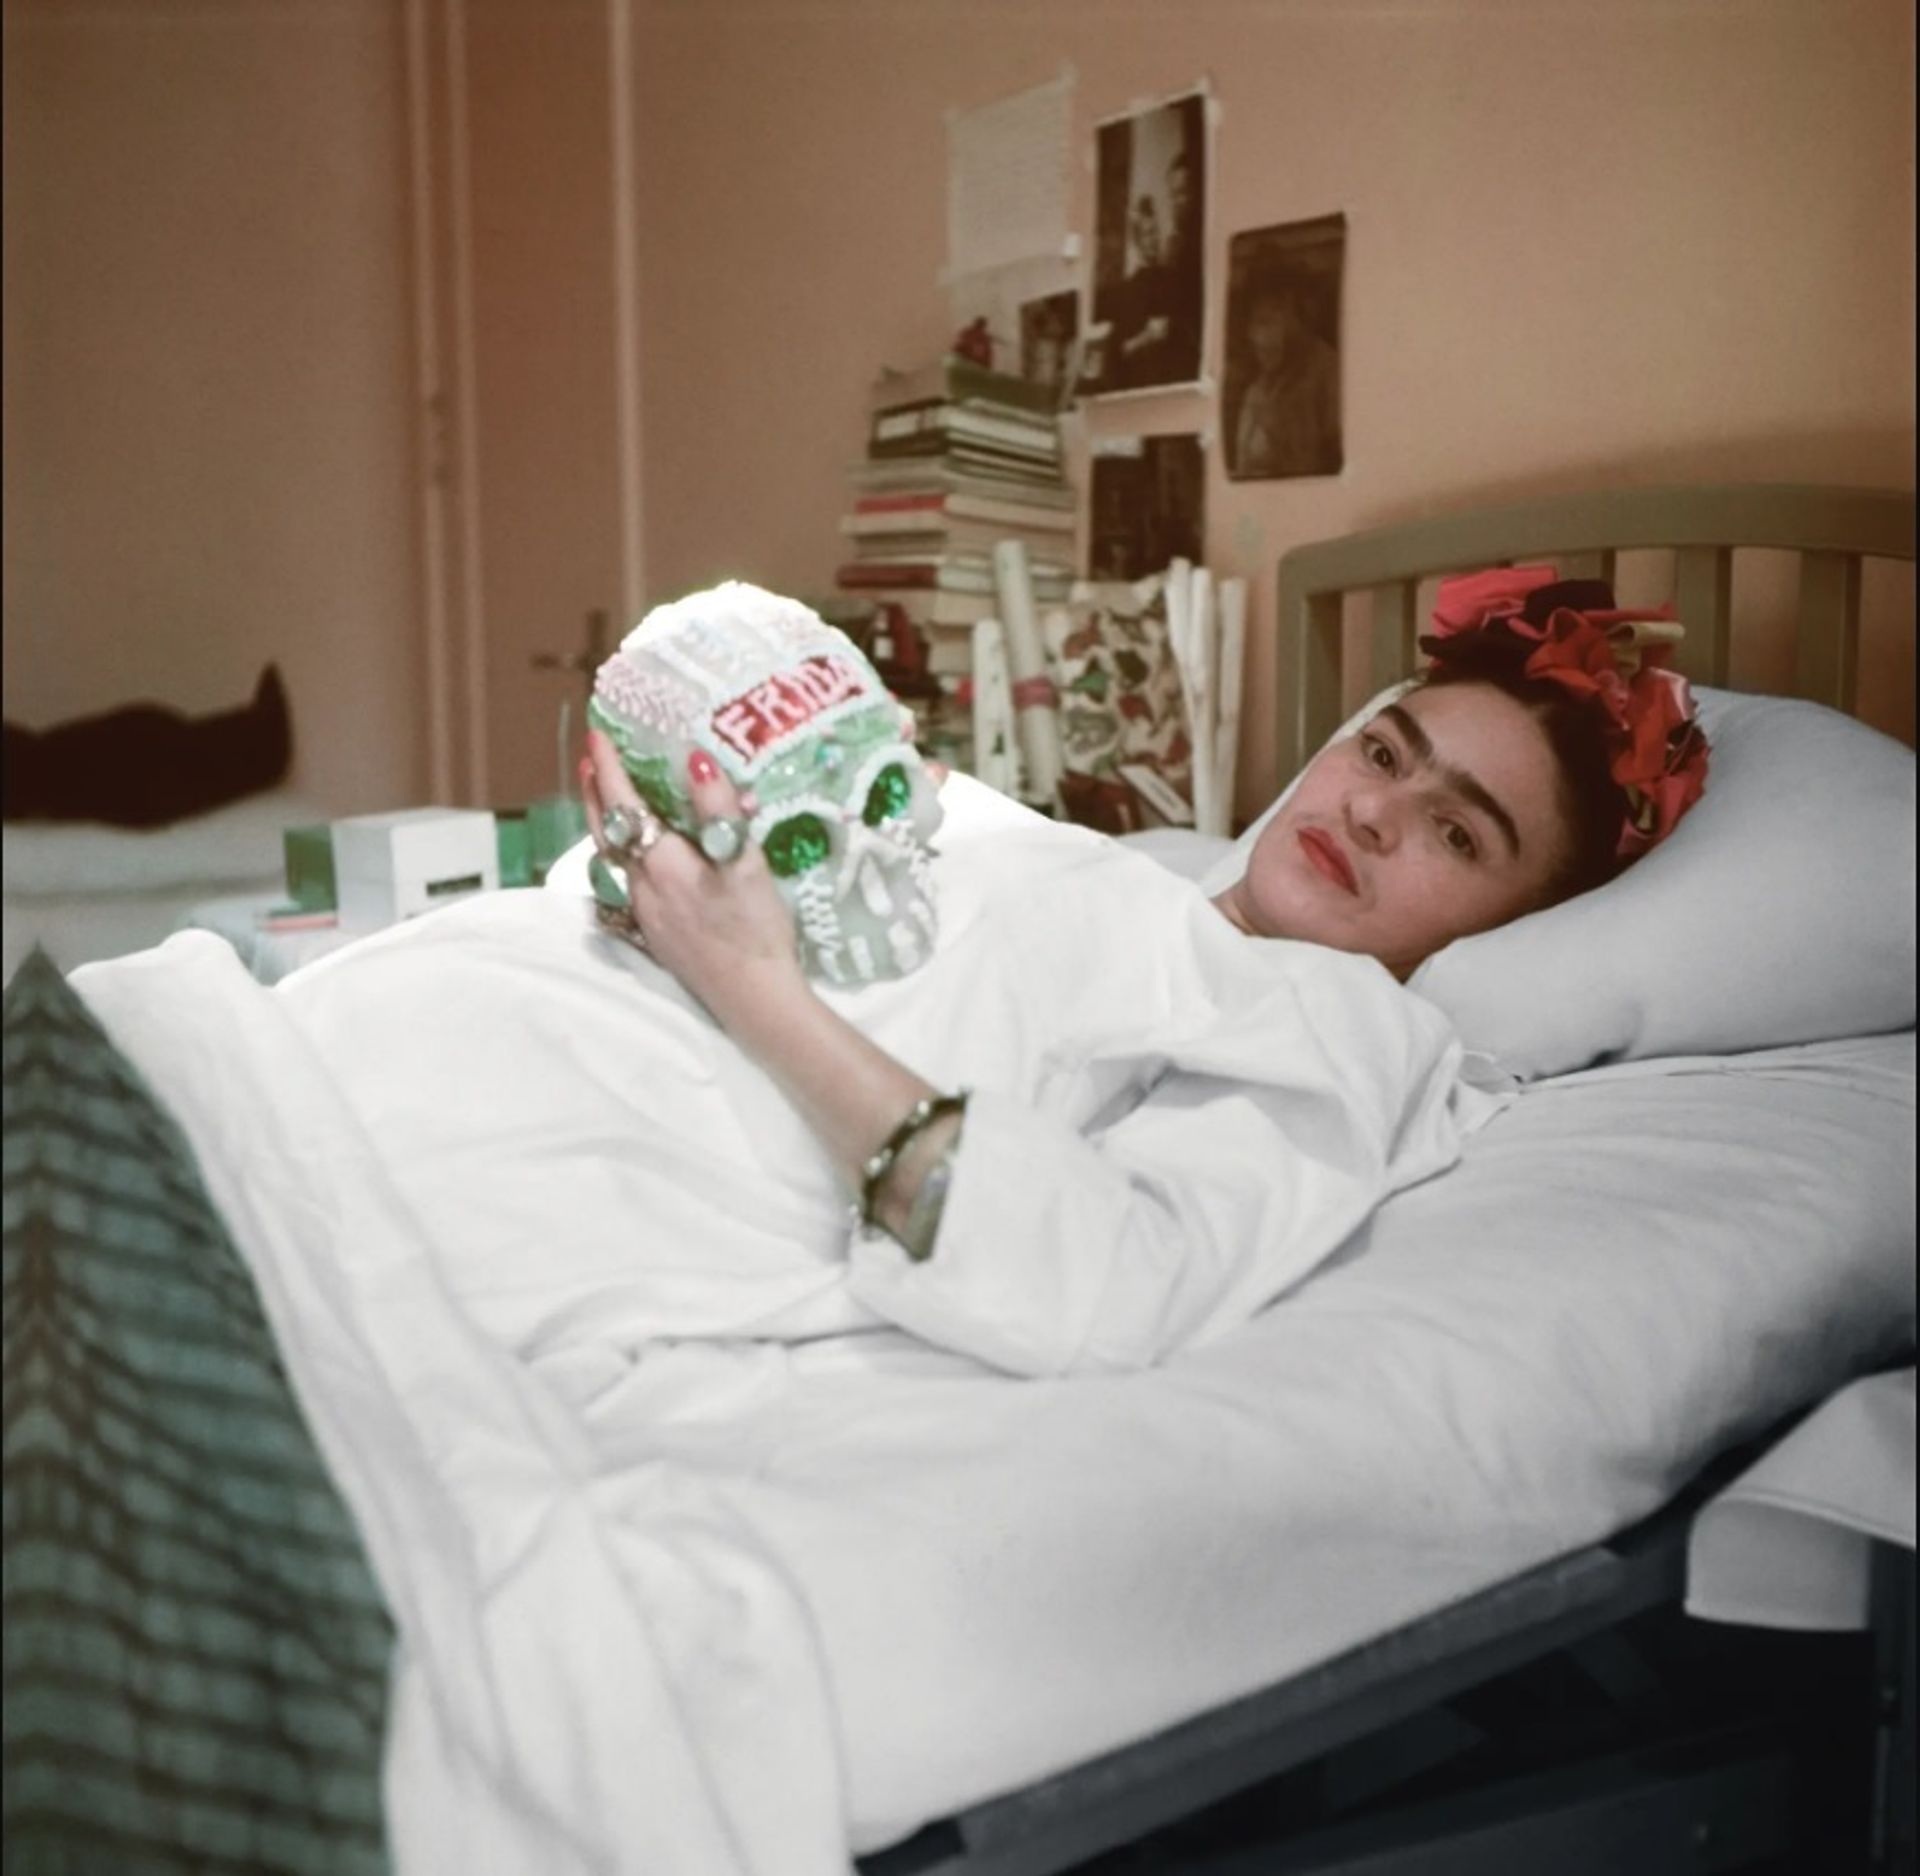 פרידה קאלו בחדר בית החולים אינגלס ב-1950

באדיבות Fundación Televisa Collection and Archive; צילום: חואן גוזמן